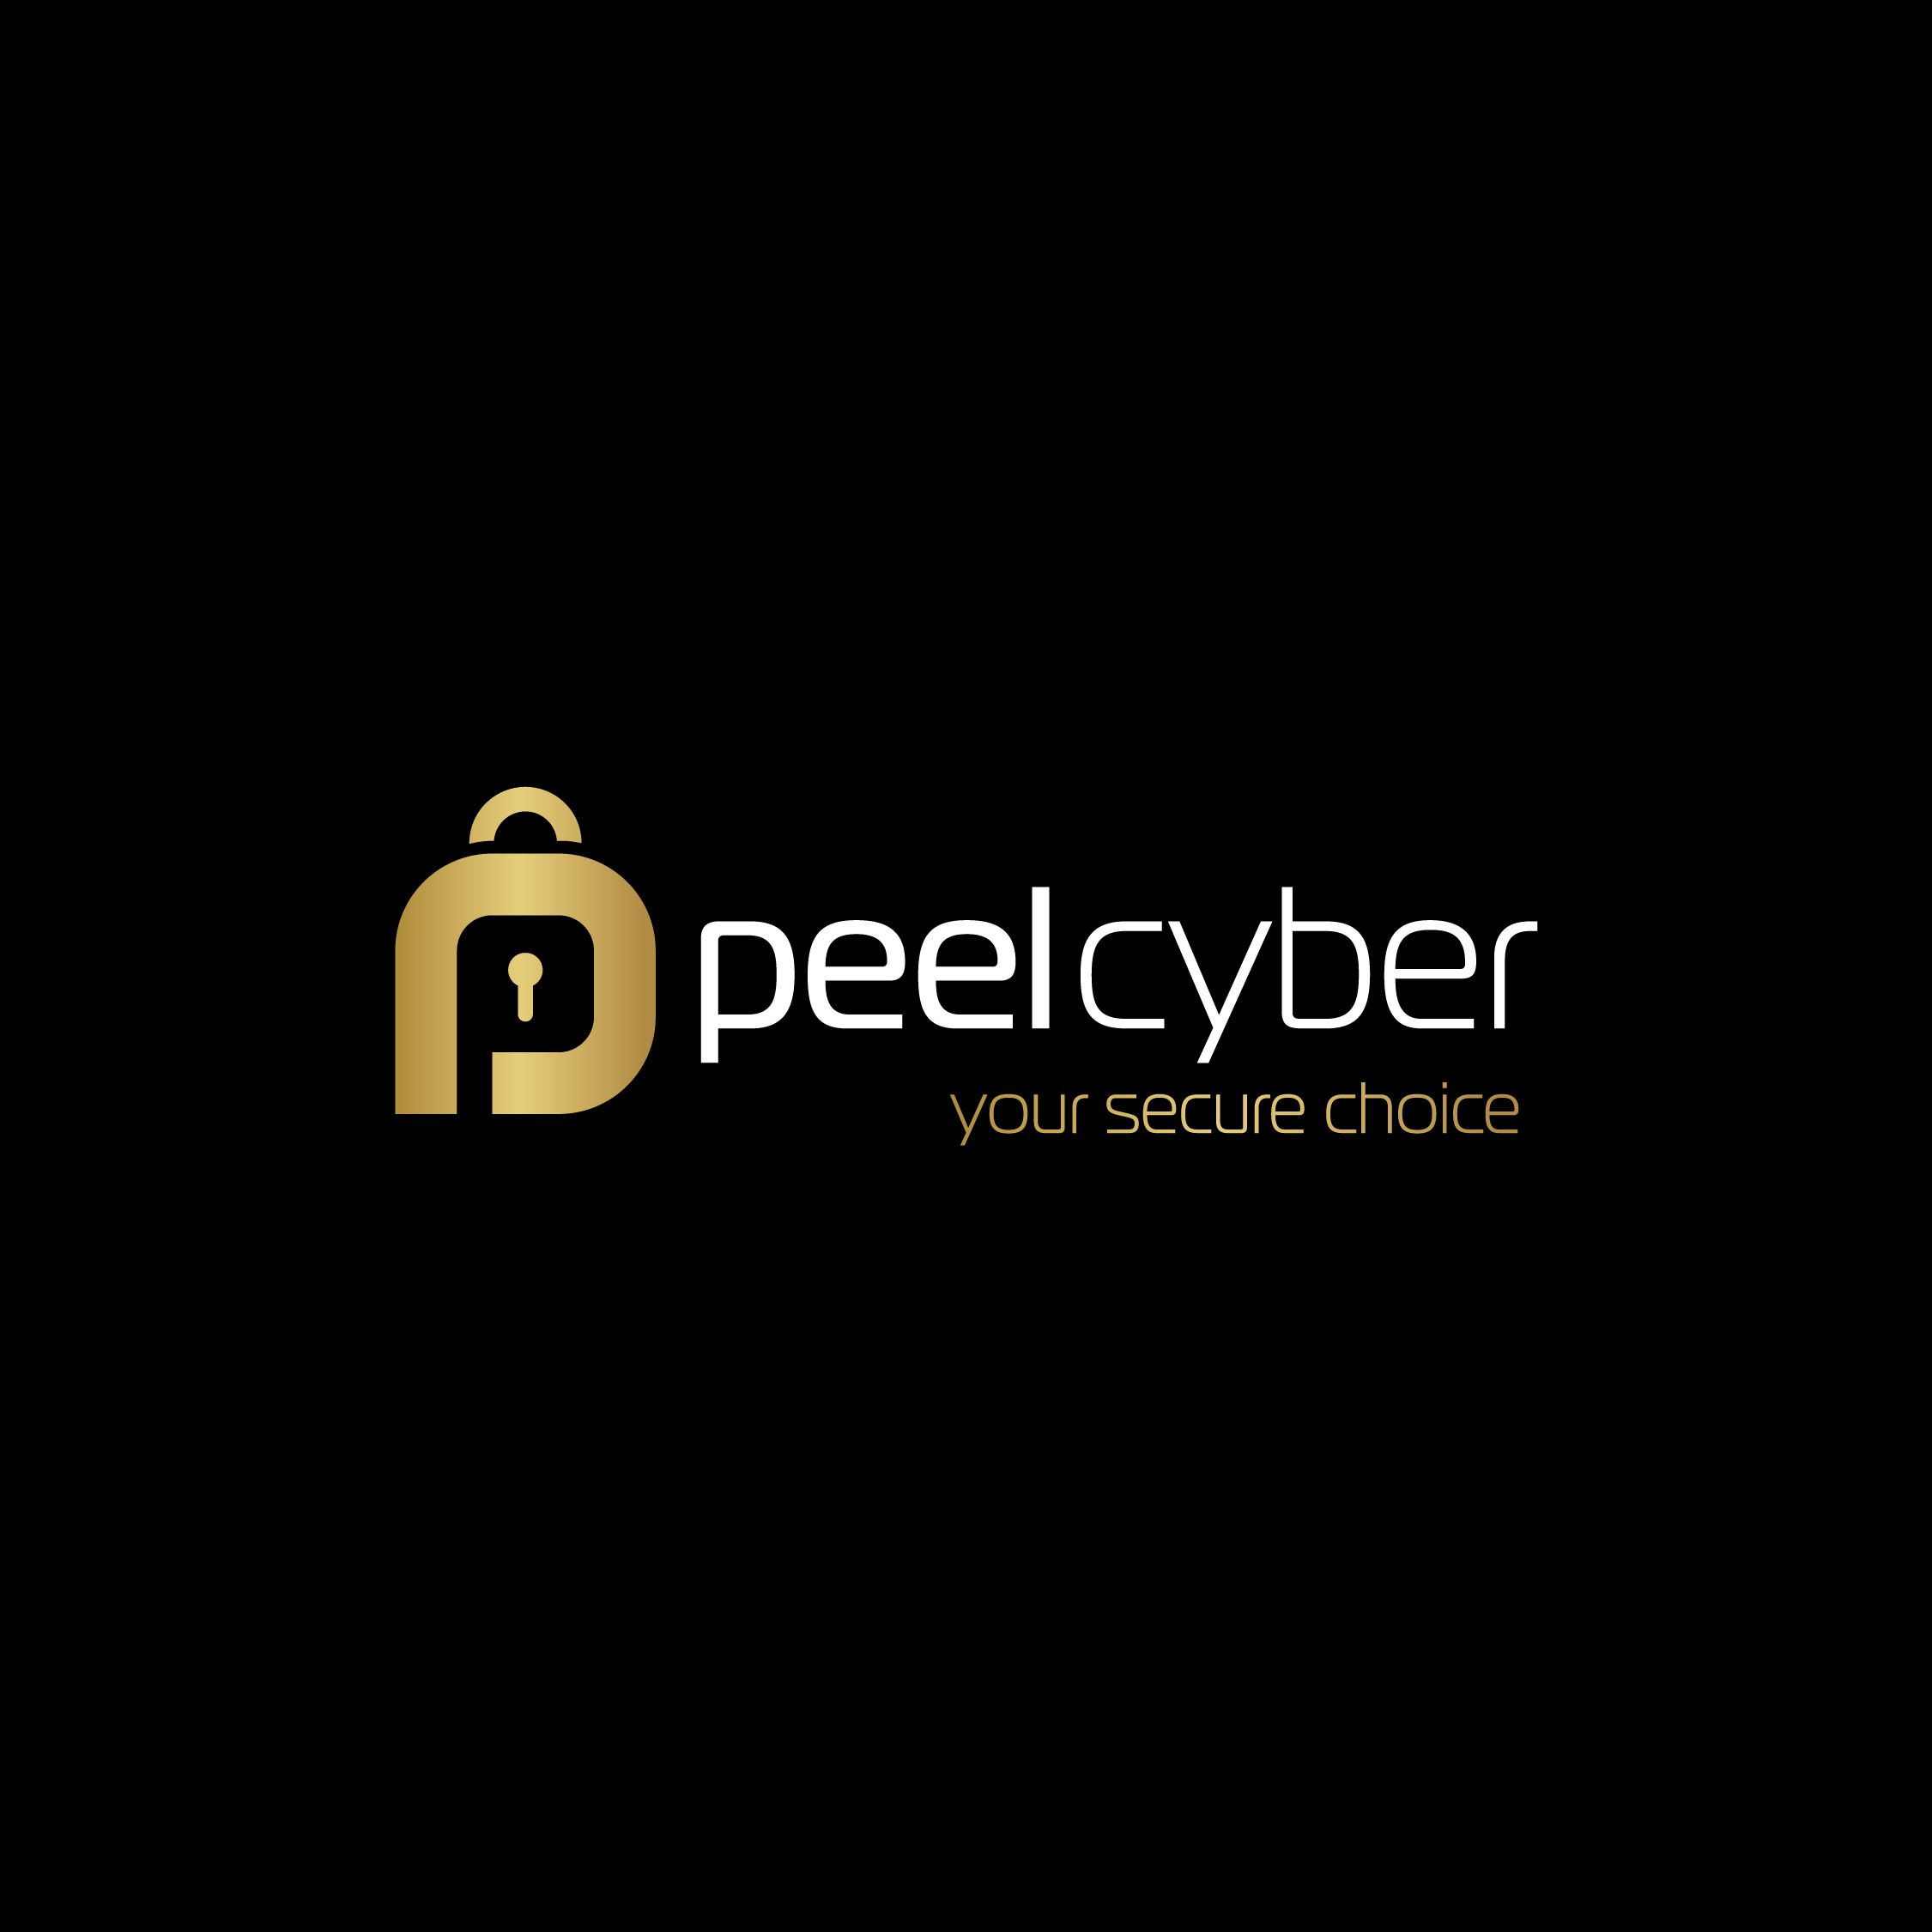 Peel Cyber